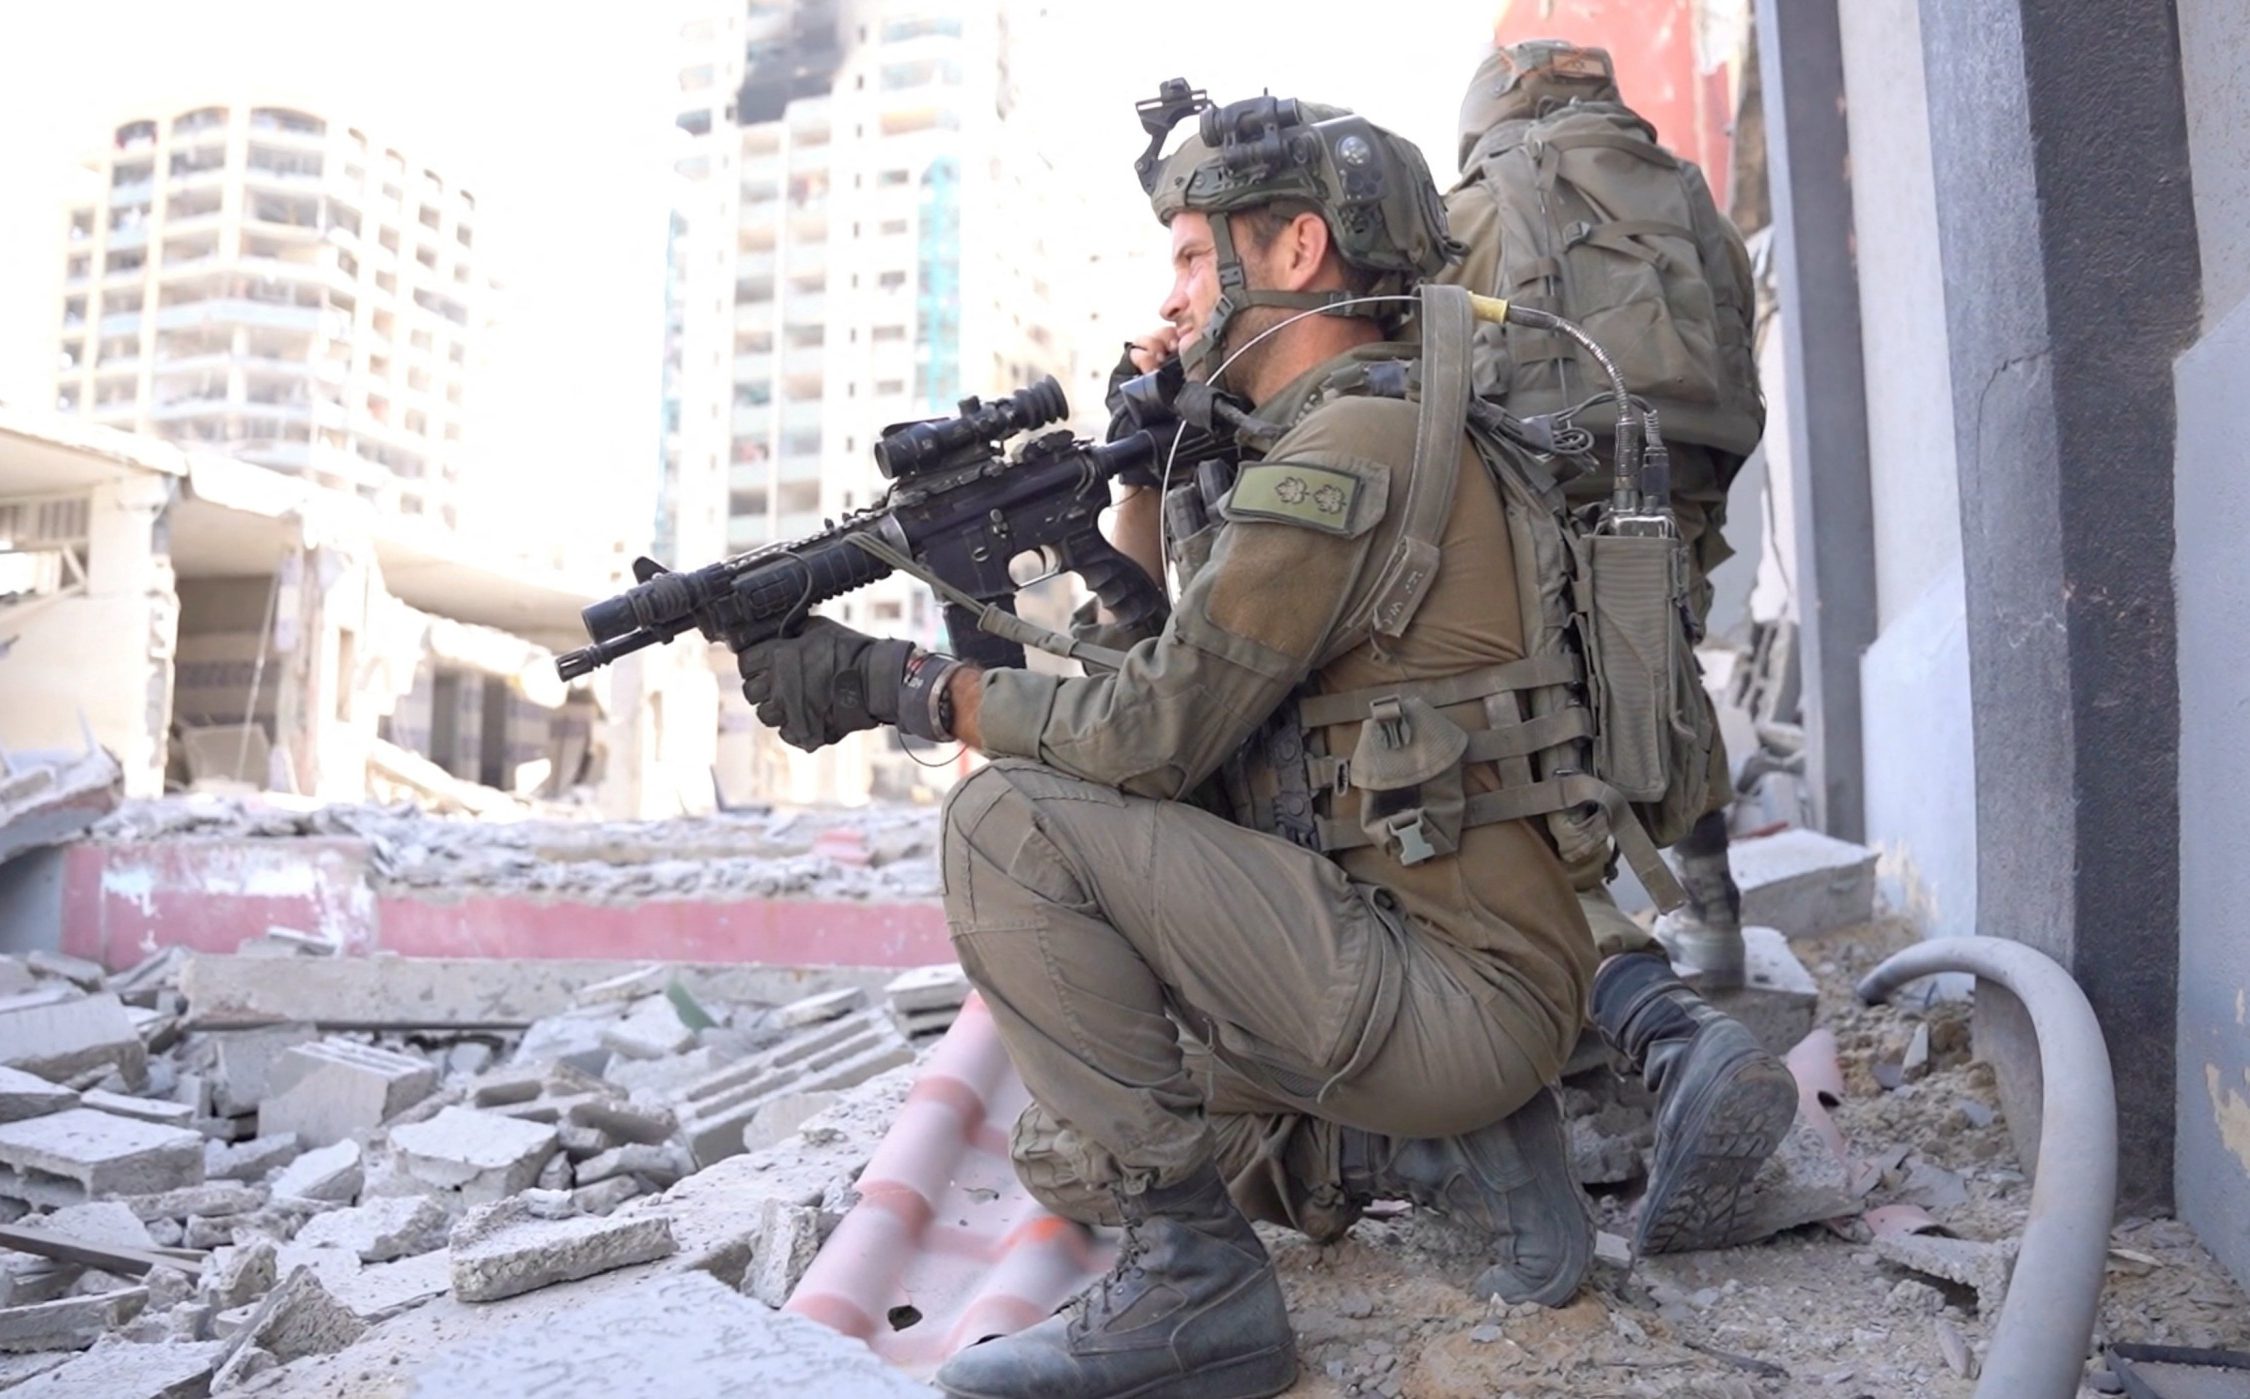 L'esercito di Israele: "Non porremo fine alla guerra, avanti fino alla vittoria"